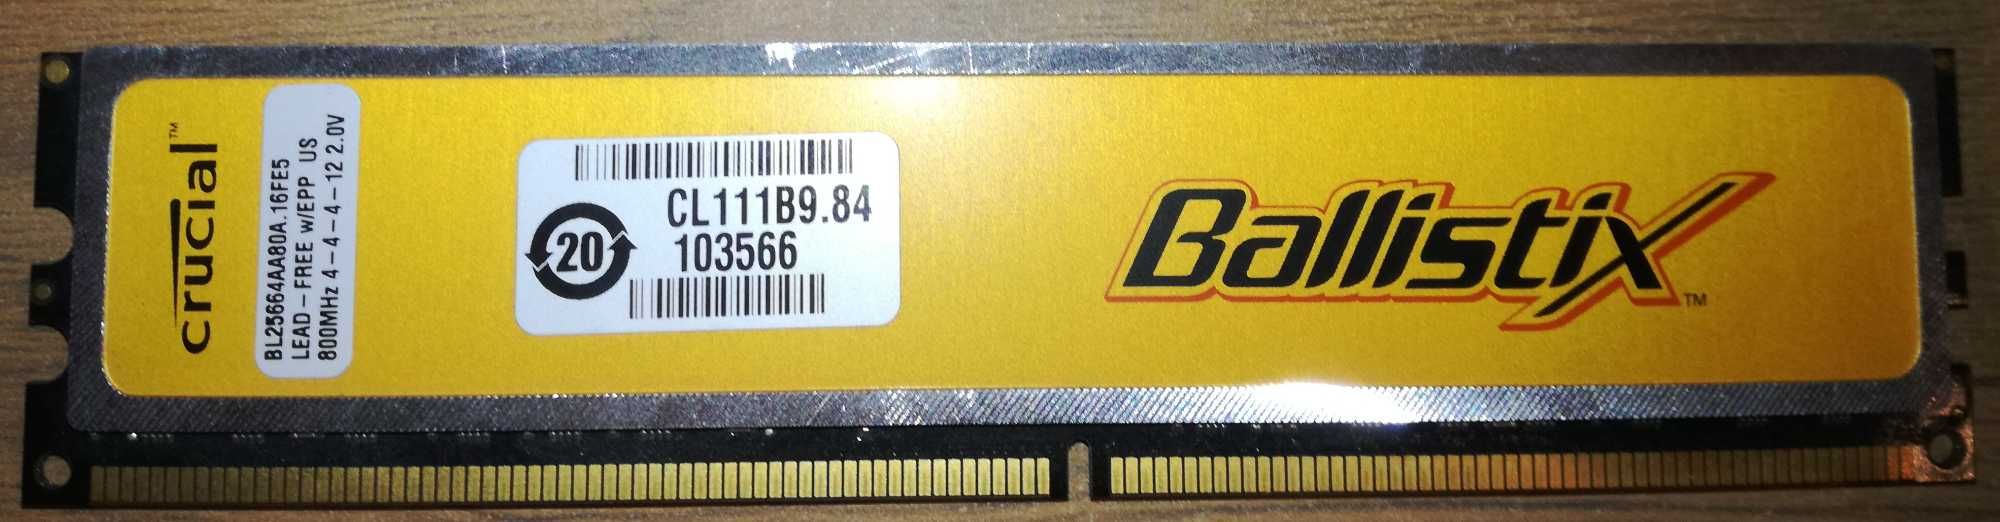 Pamięć RAM 2GB (2x1GB) OCZ Platinum PC2-6400 + GRATIS